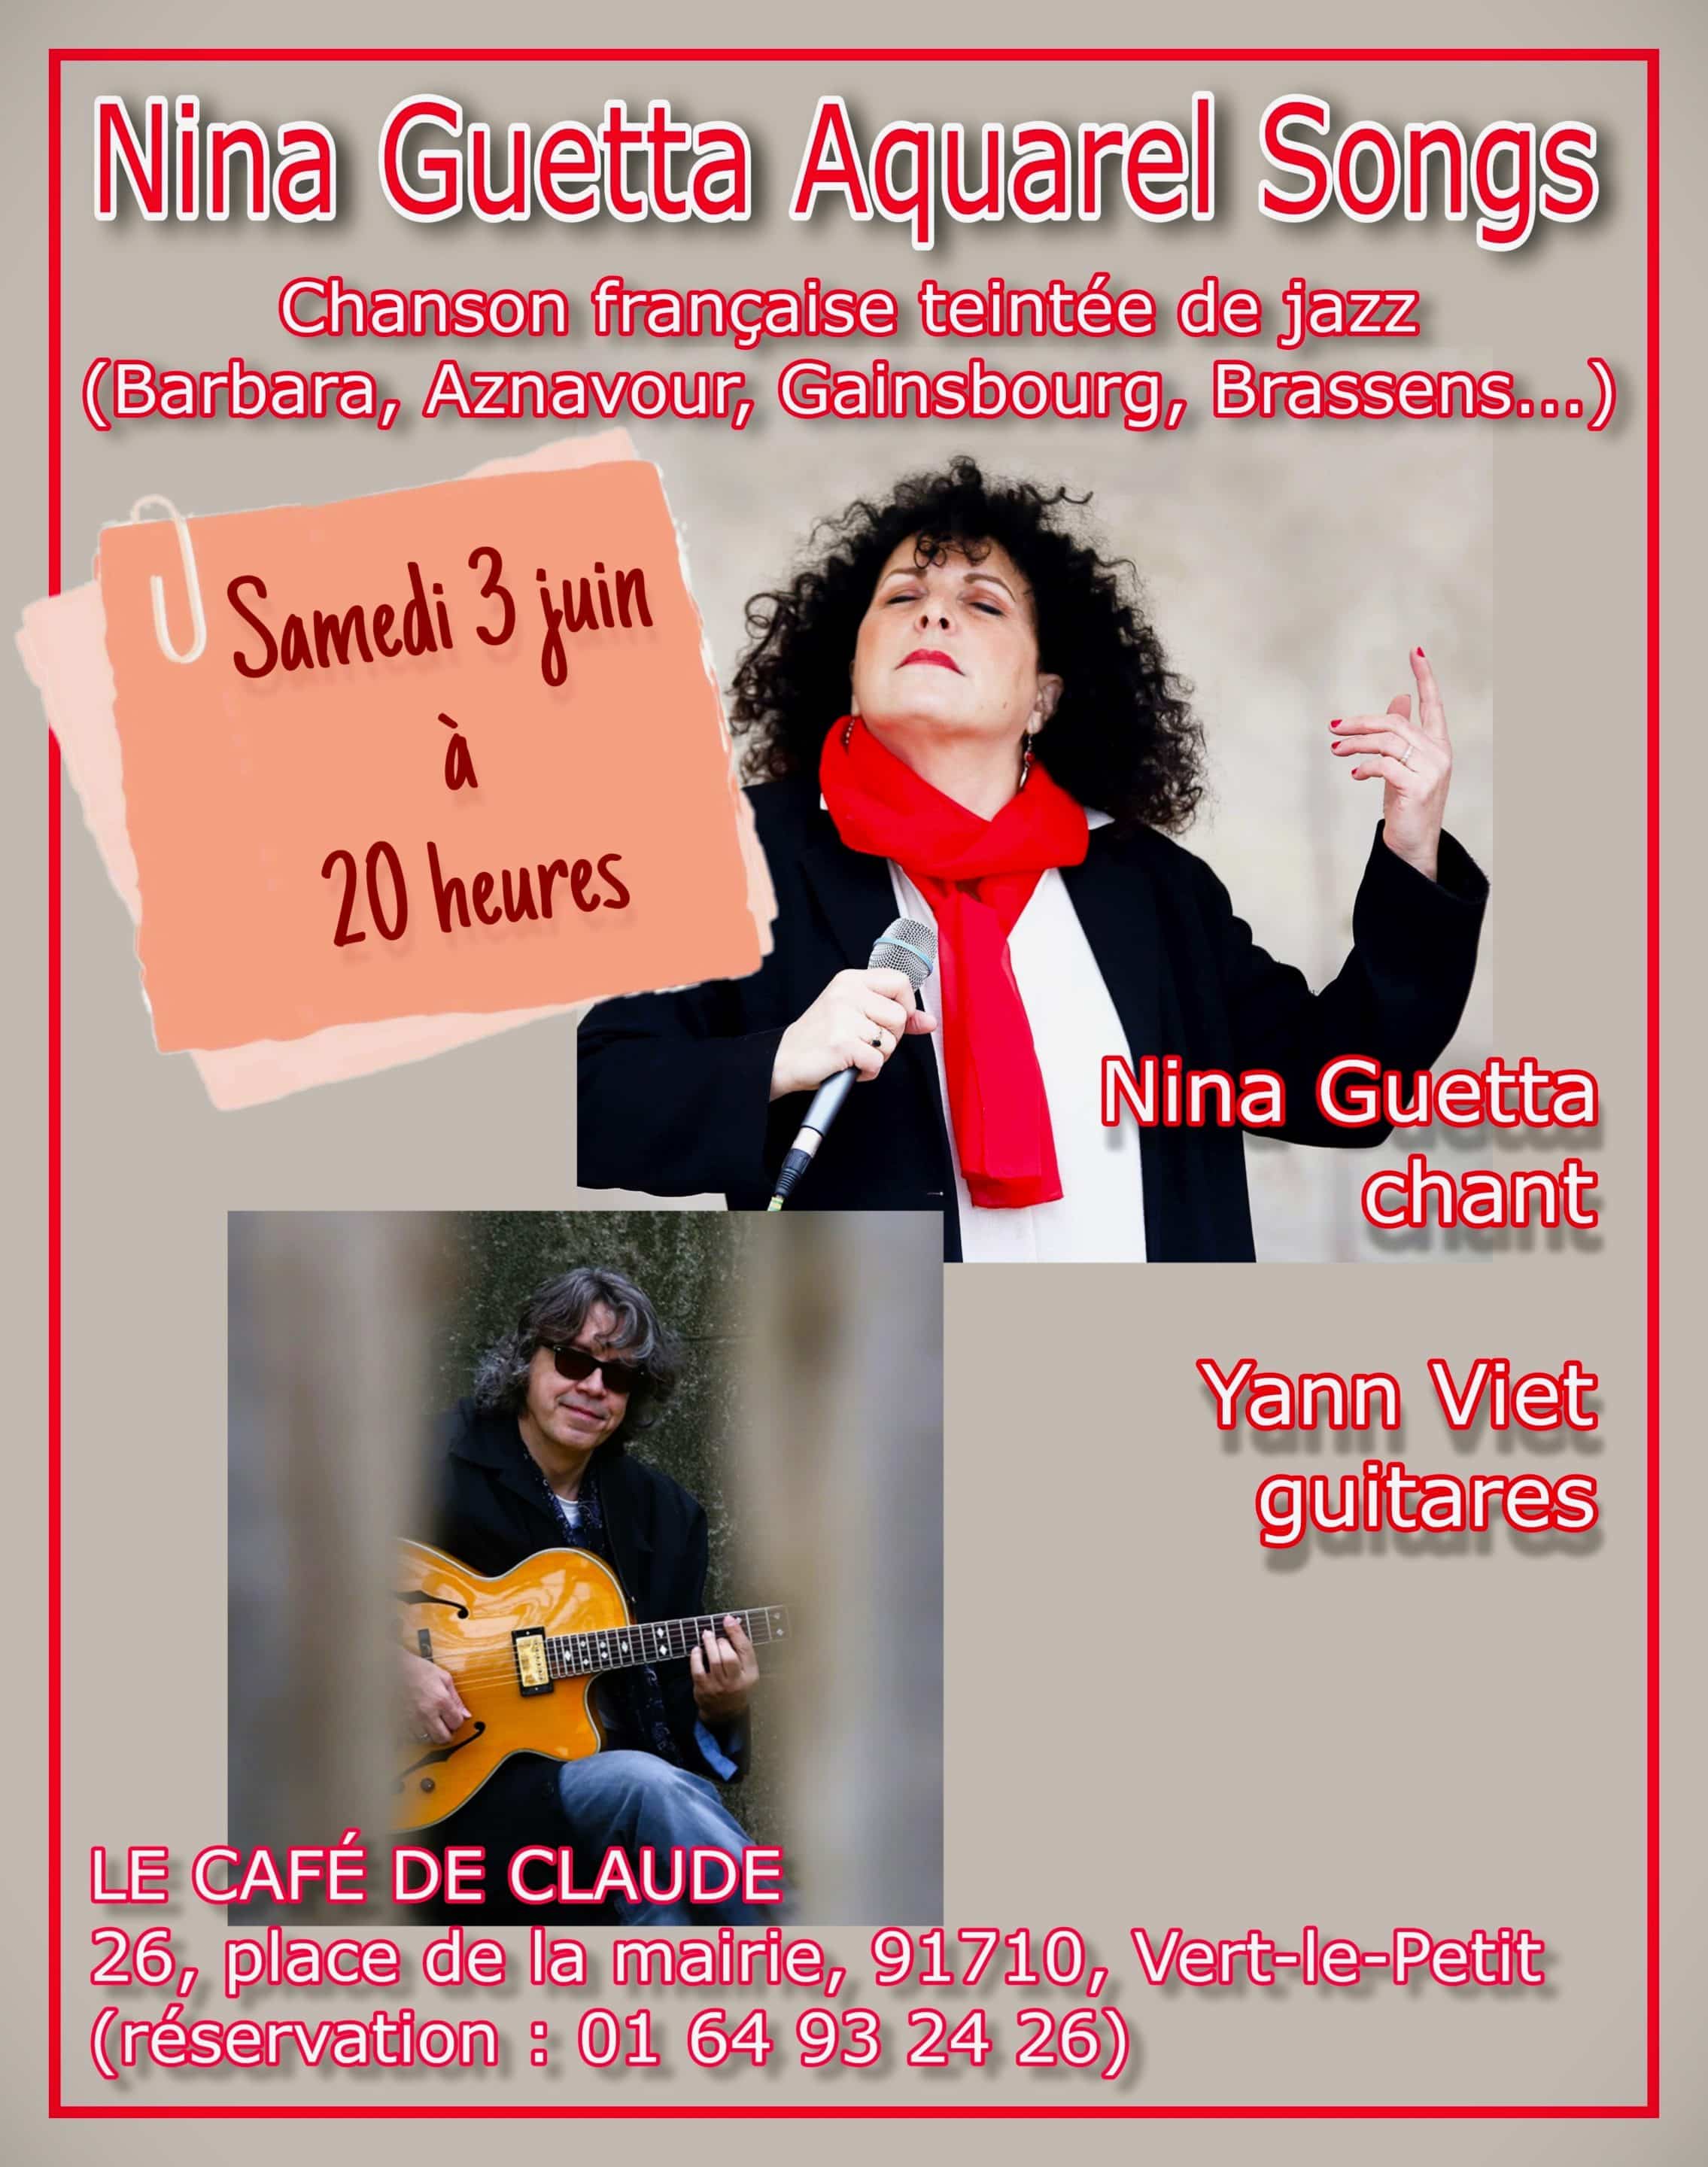 Concert au restaurant Le Café de Claude à Vert-Le-Petit (Essonne), le samedi 3.06.23 à partir de 20h – Chanson française